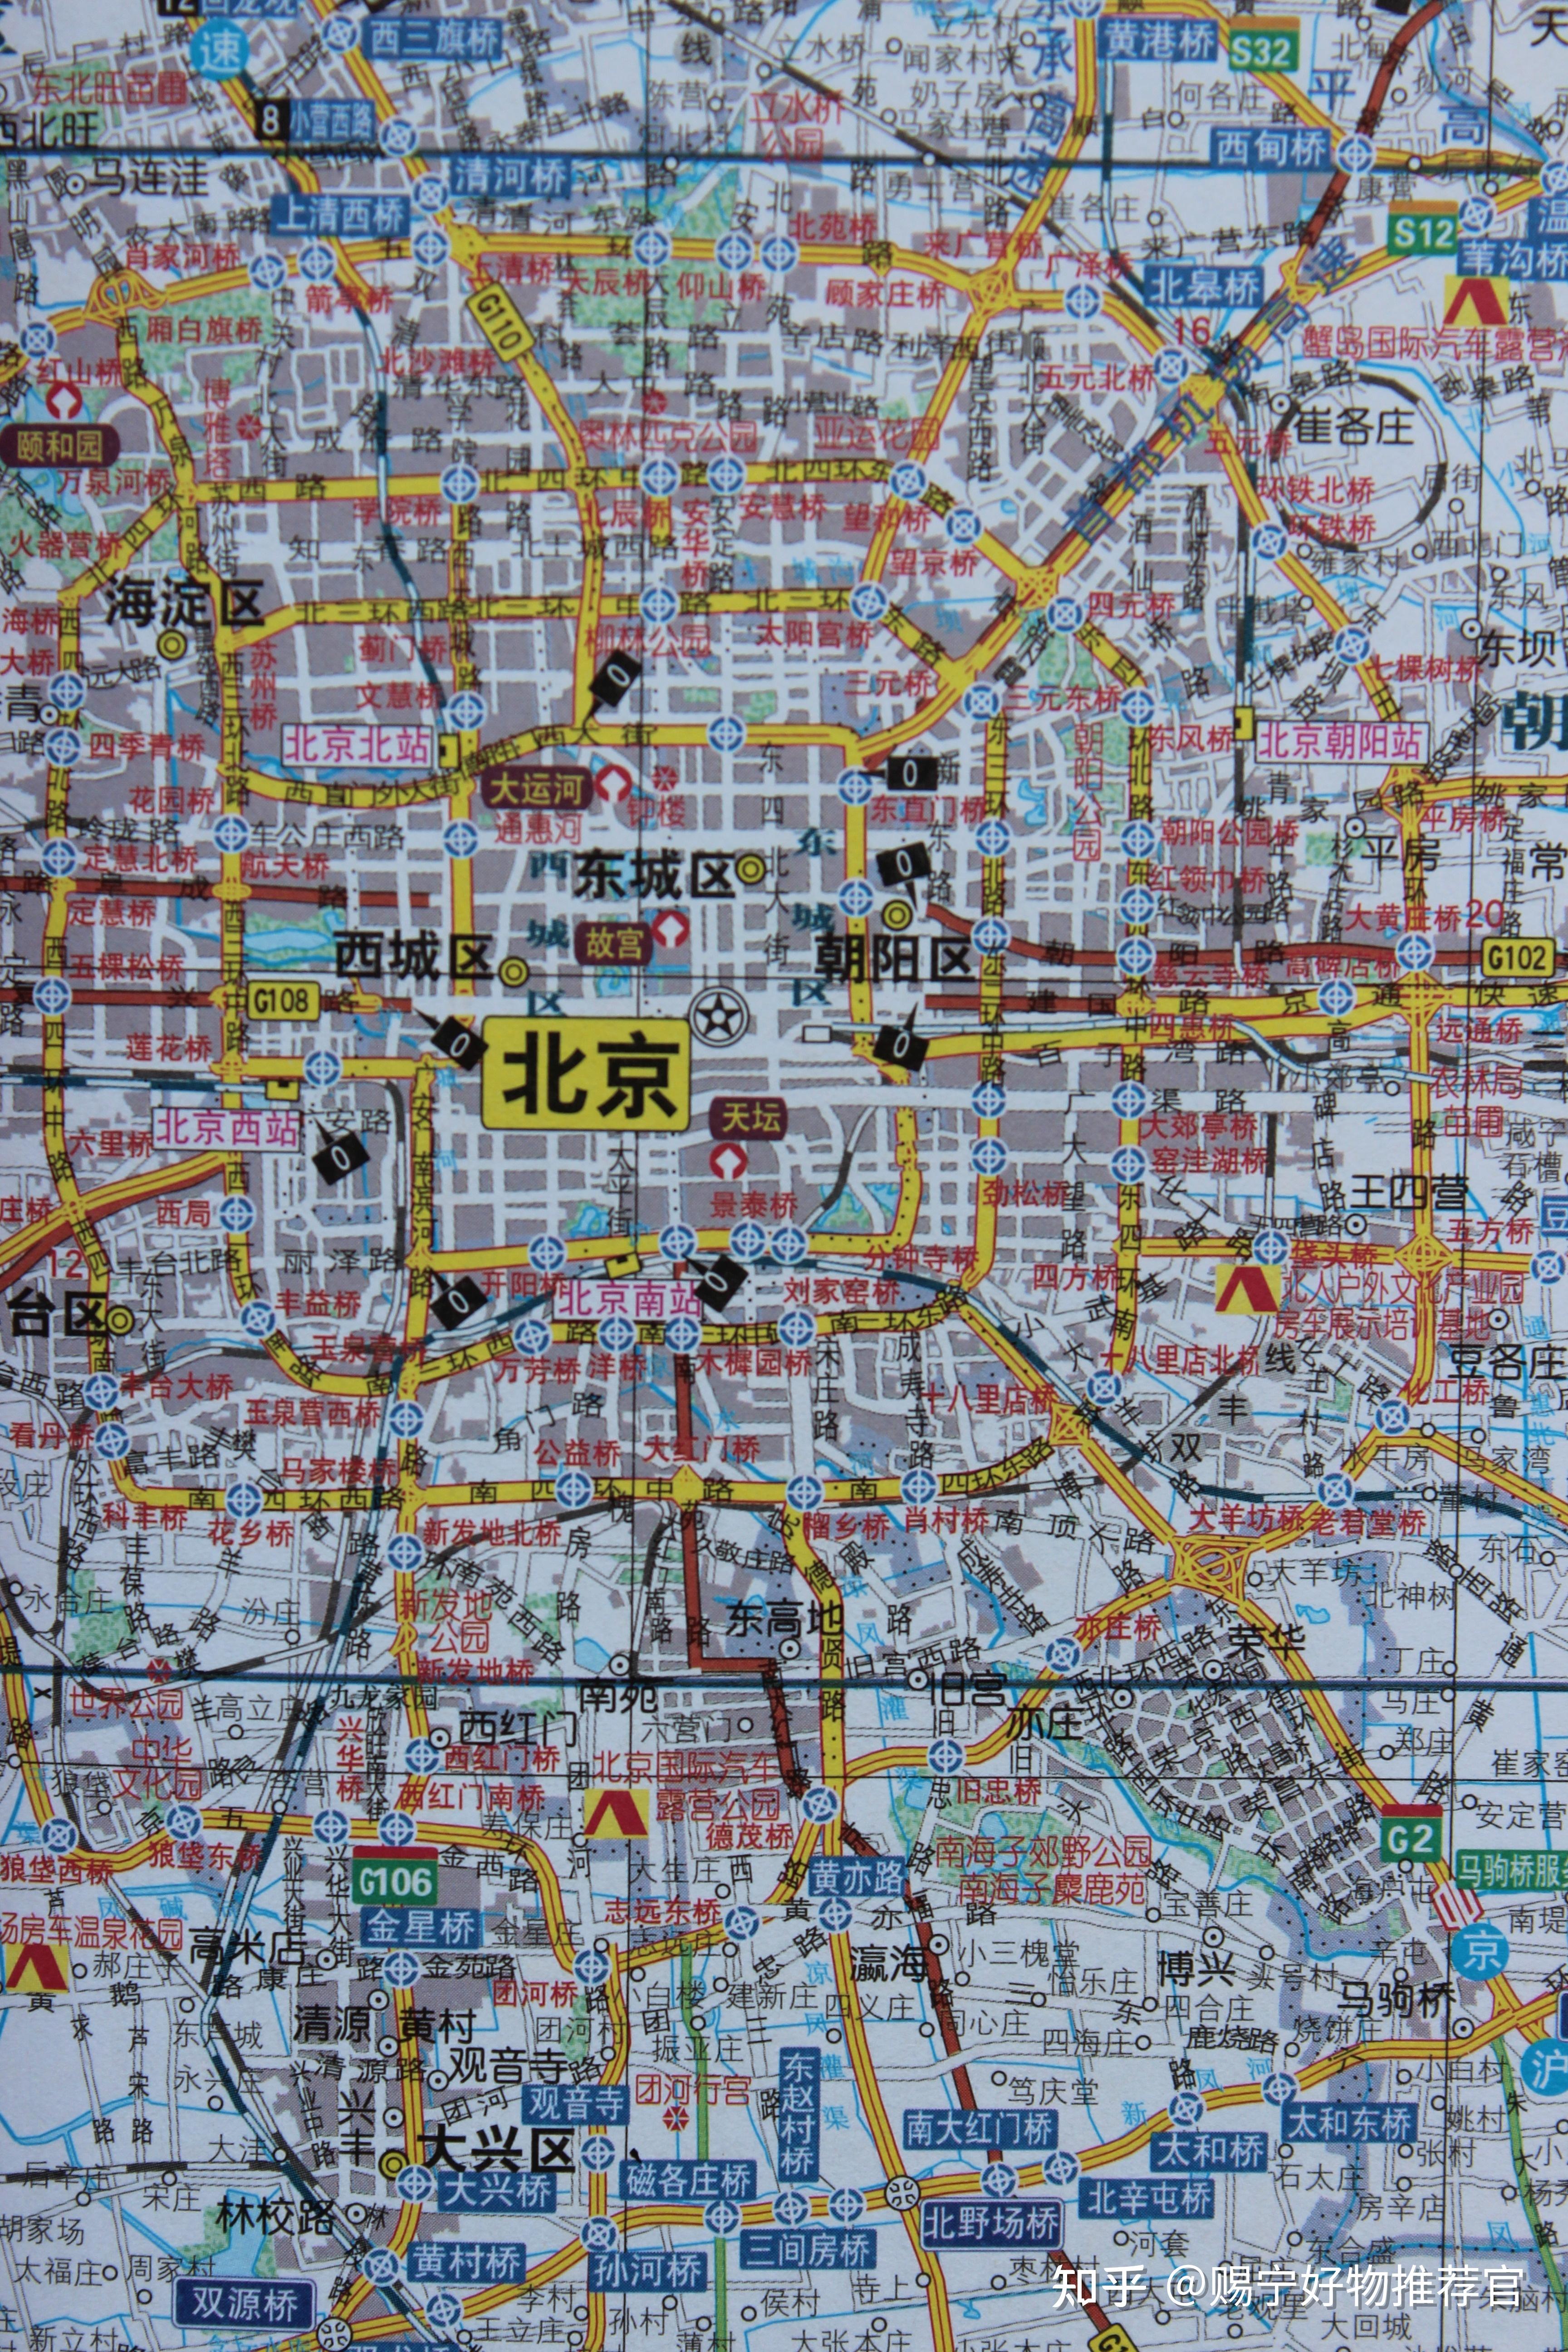 中国自驾游地图集:一本让你省心省钱的自驾宝典